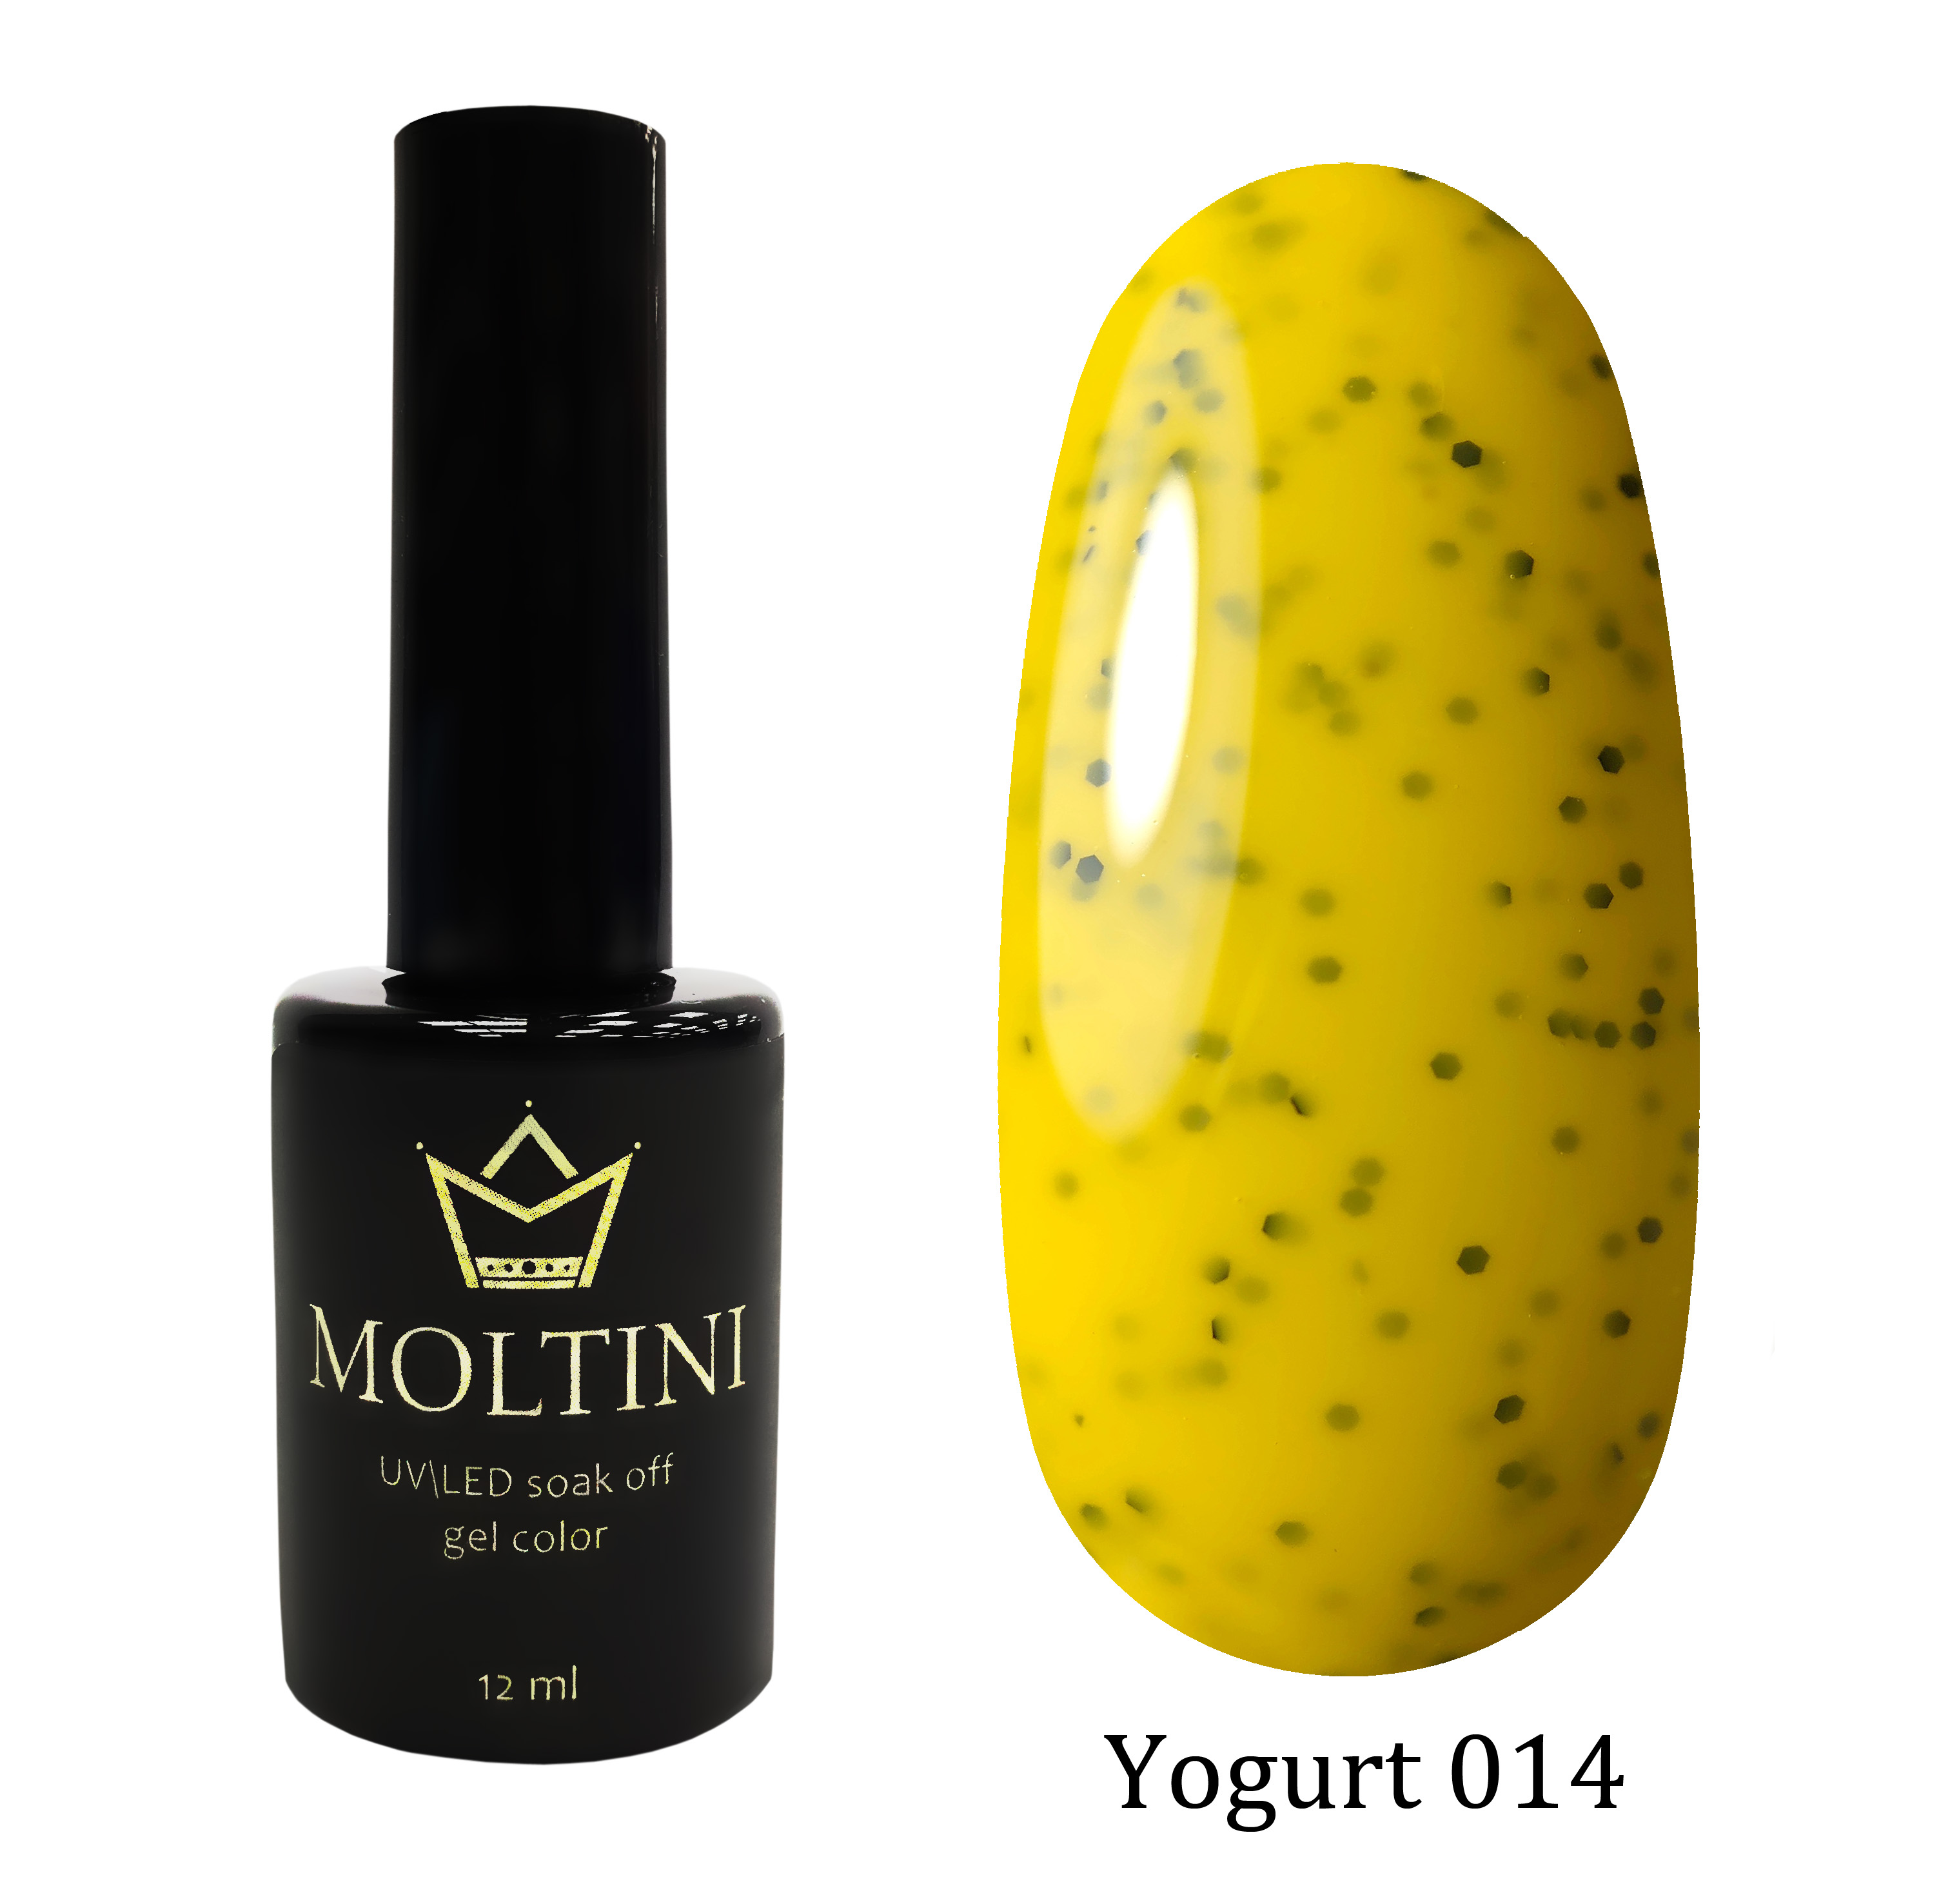 Moltini цветной гель-лак Yogurt 014, 12 мл